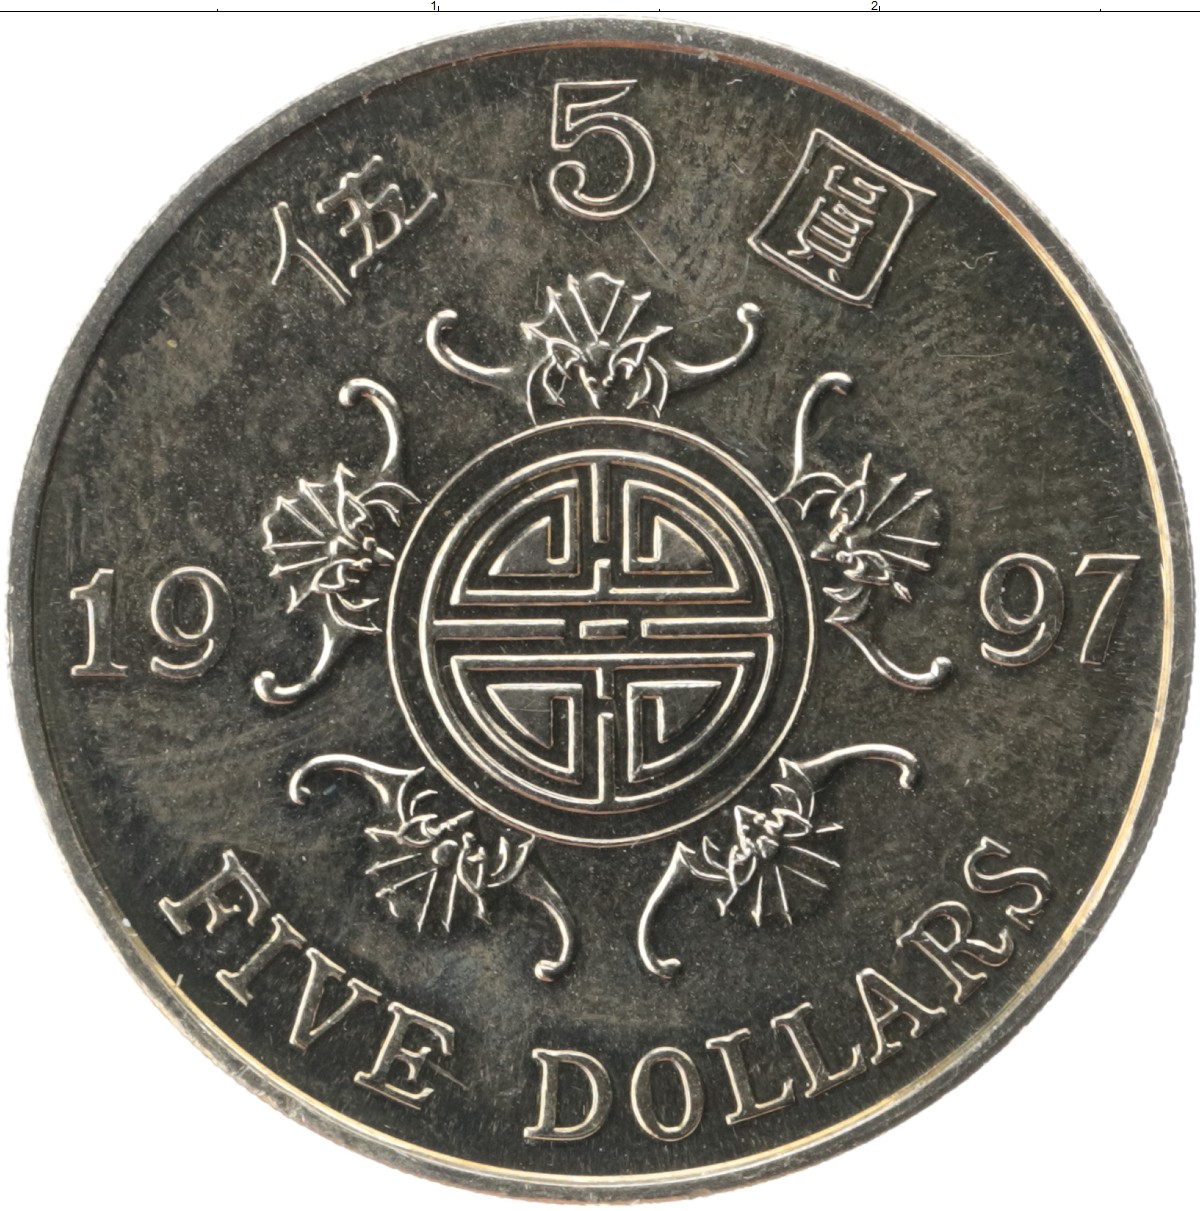 899 hkd в рублях. Монета 5 долларов Гонконг. Гонконгский доллар монеты. Гонконг валюта монеты. Монетка Гонконга.